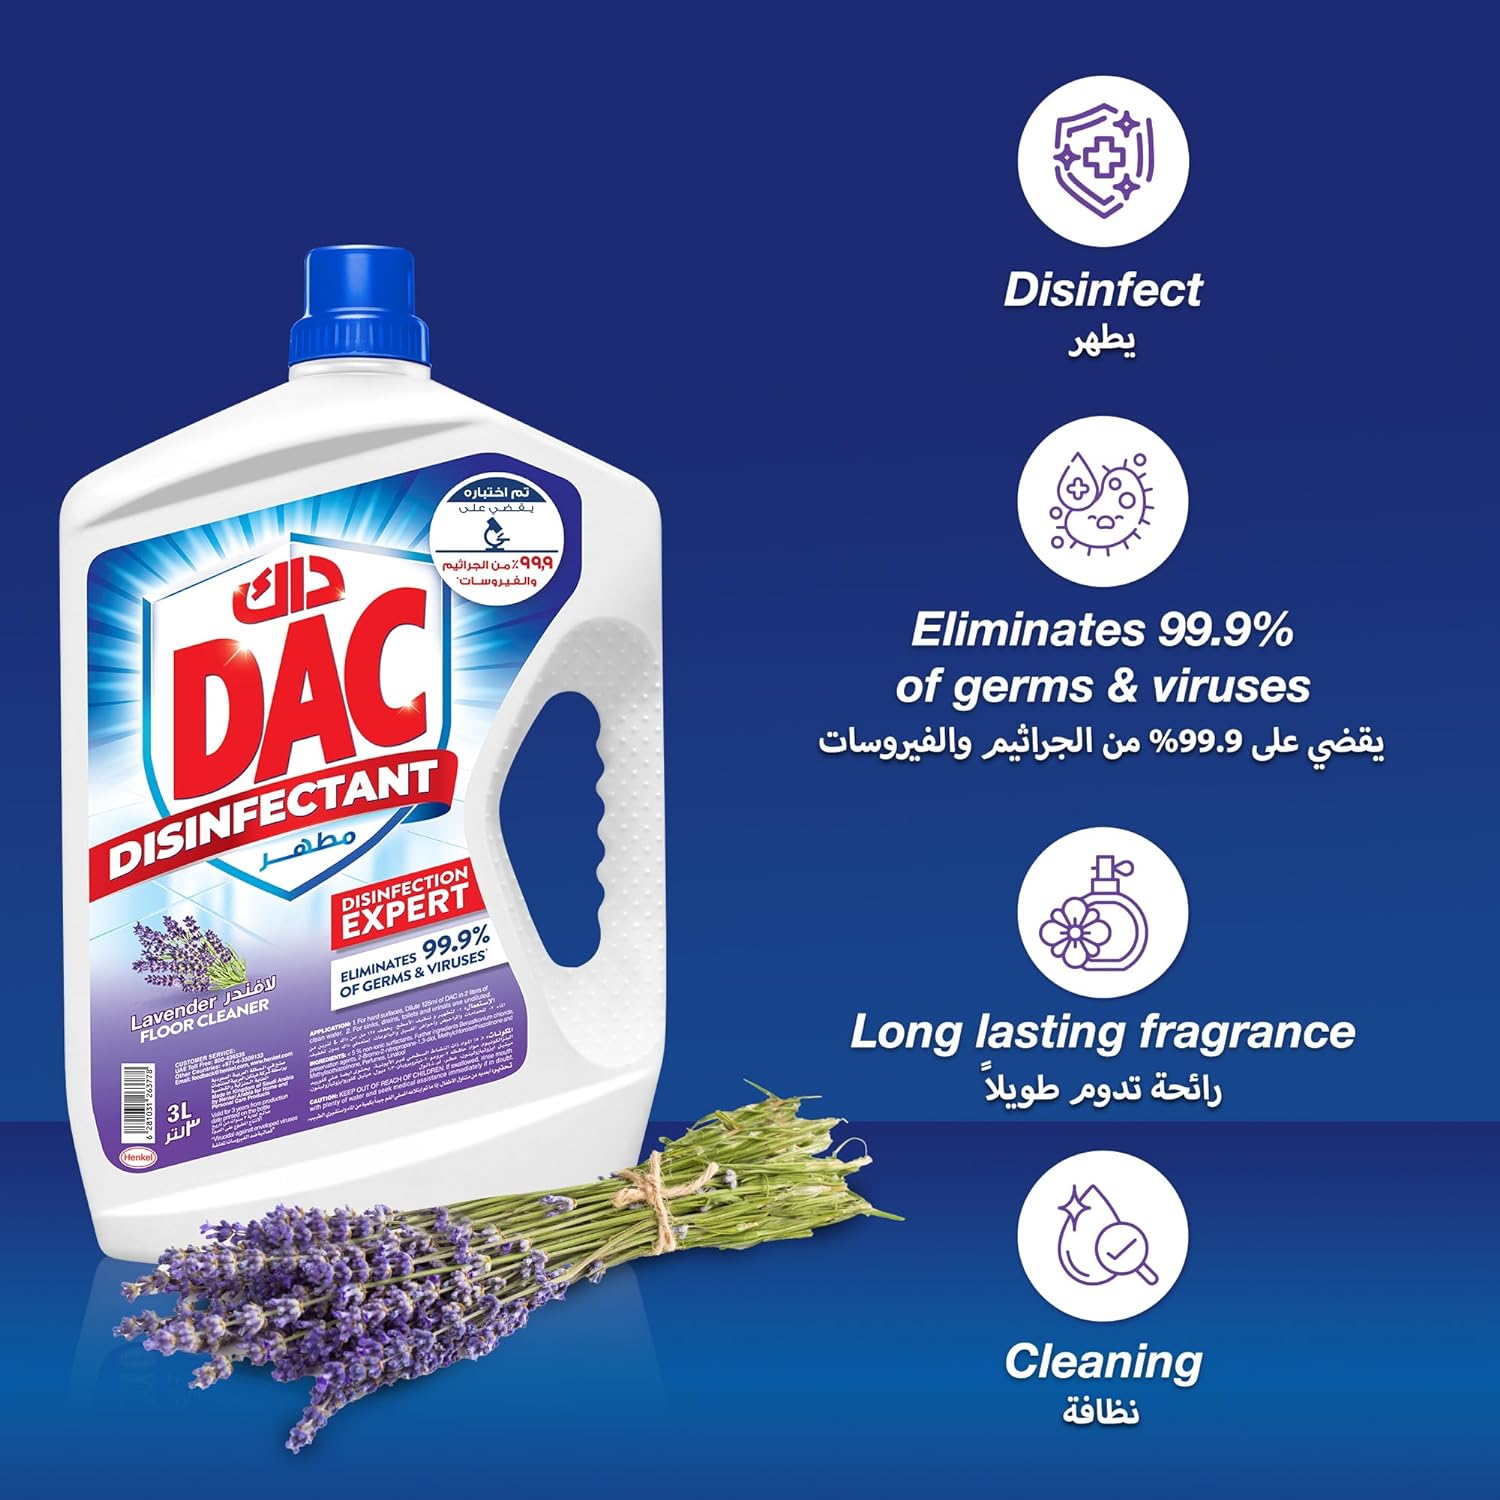 Dac Disinfectant Floor Cleaner - Lavender, 4.5L